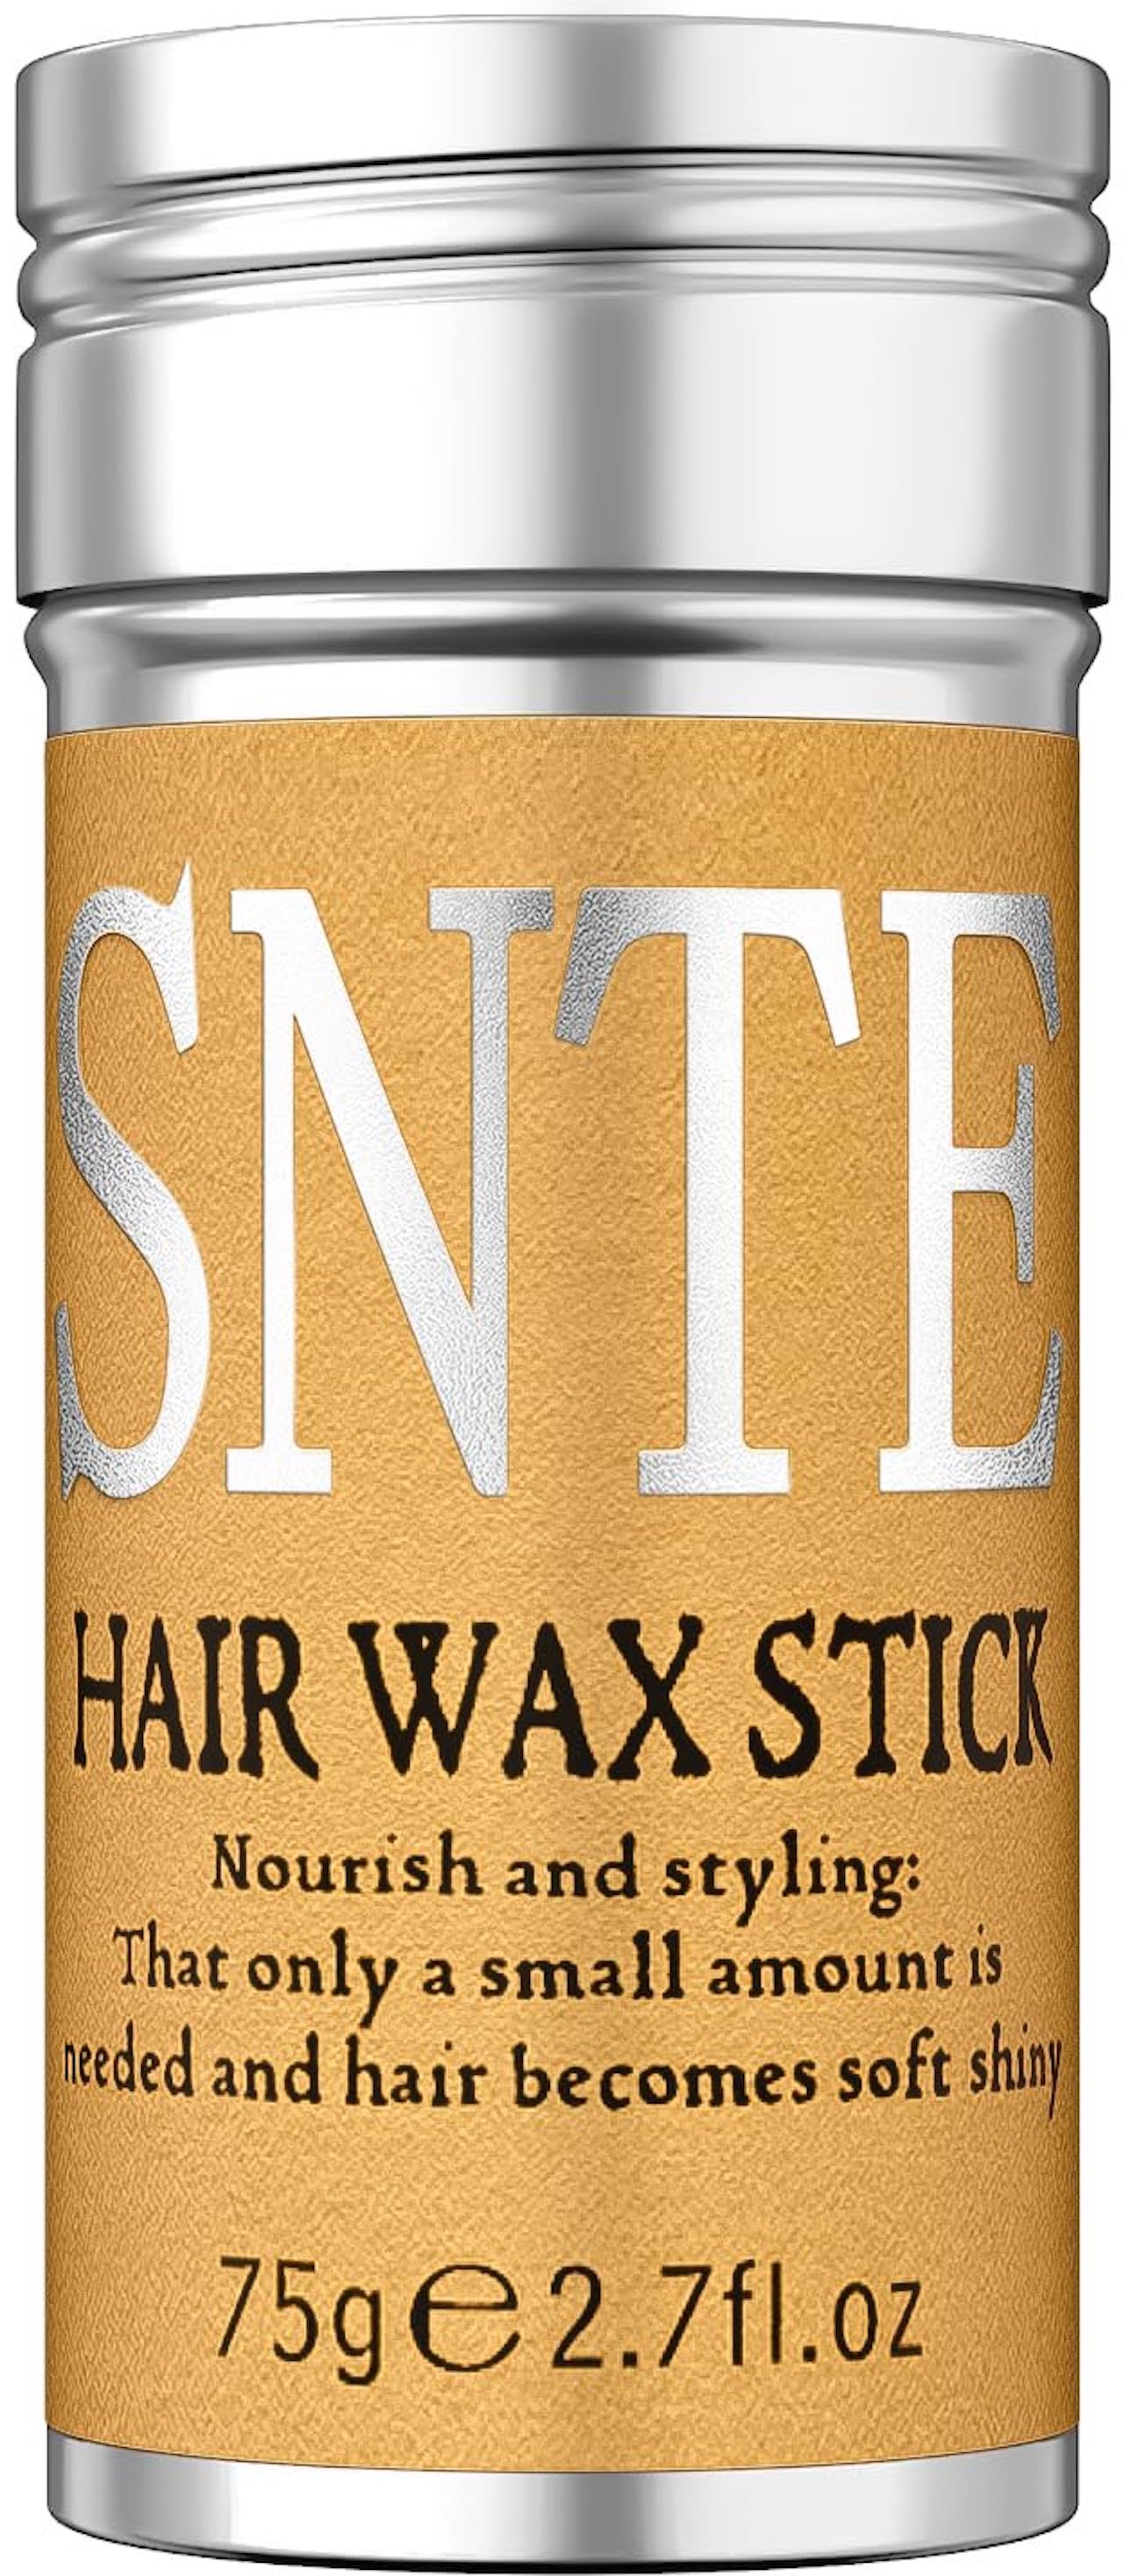 hair wax stick